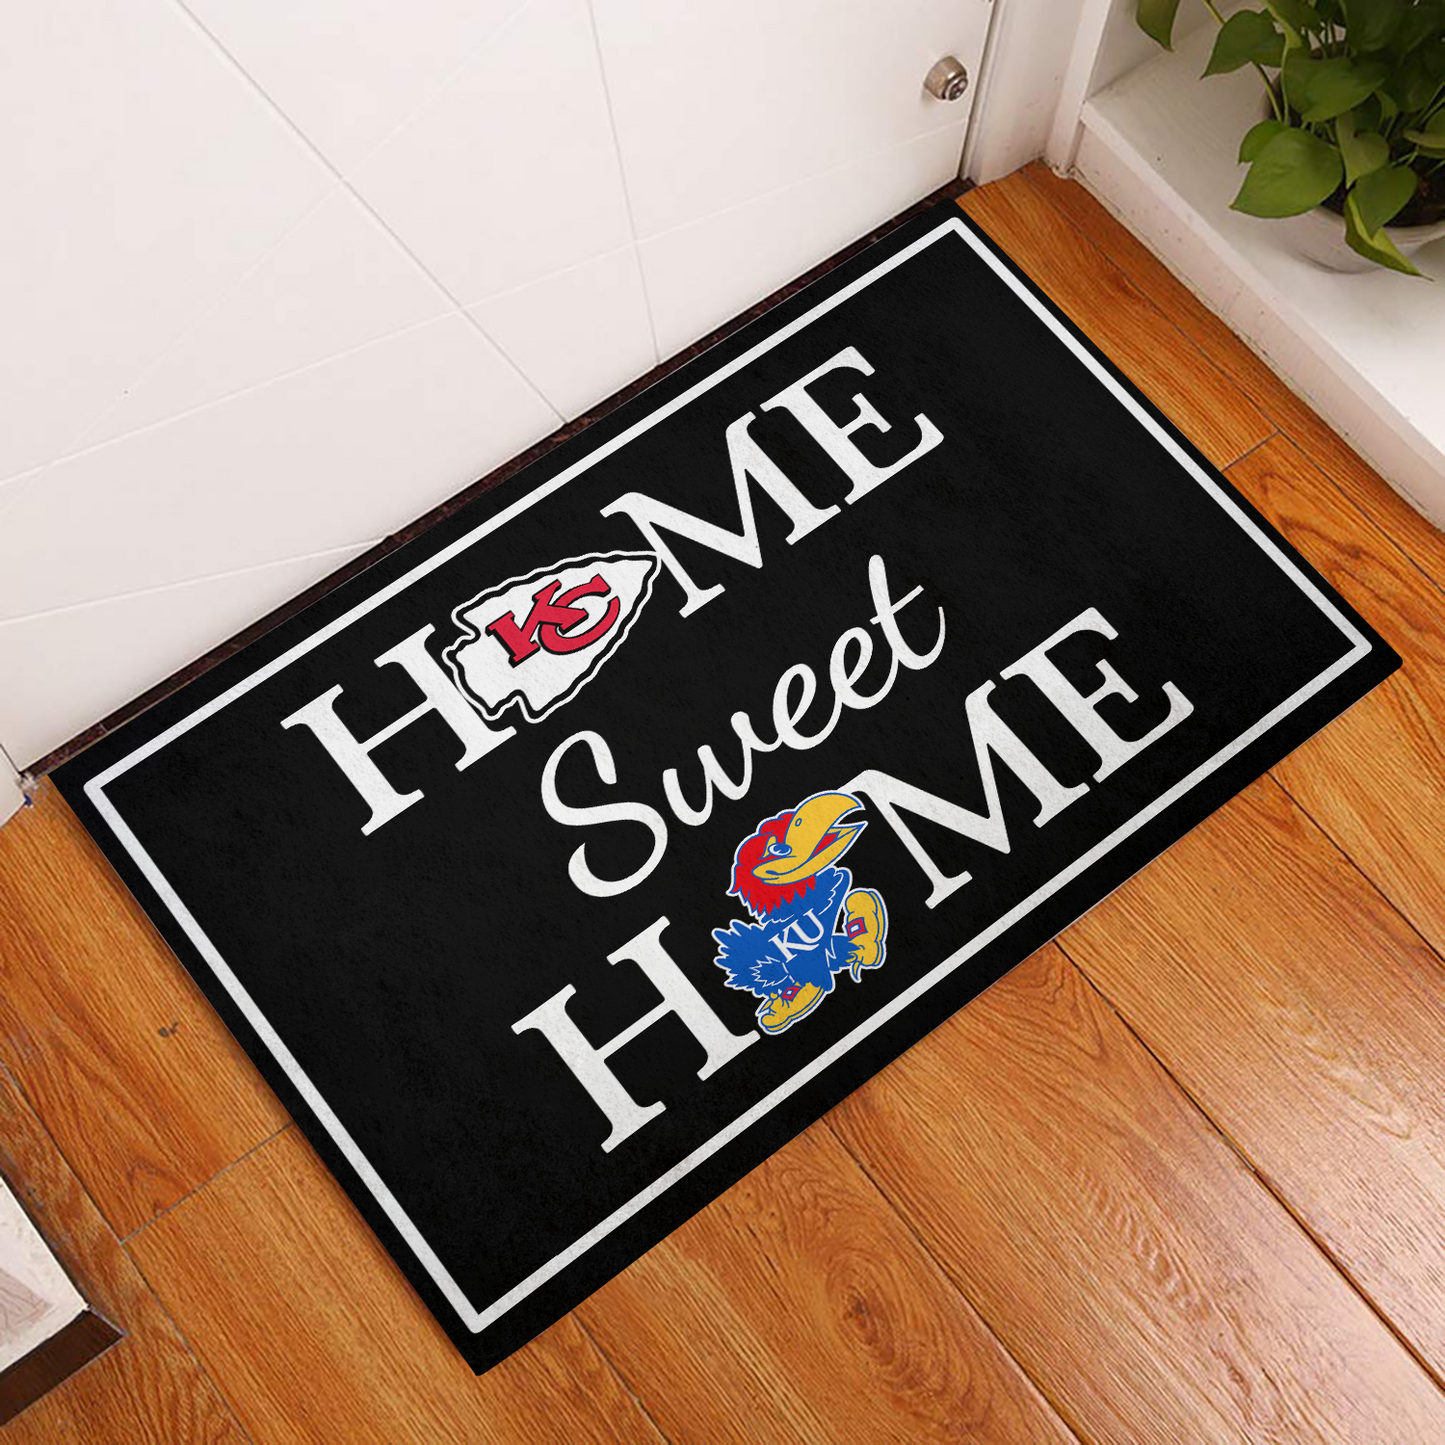 Home Sweet Home - Customized Doormat For Dustin Link - Anti Slip Indoor Doormat